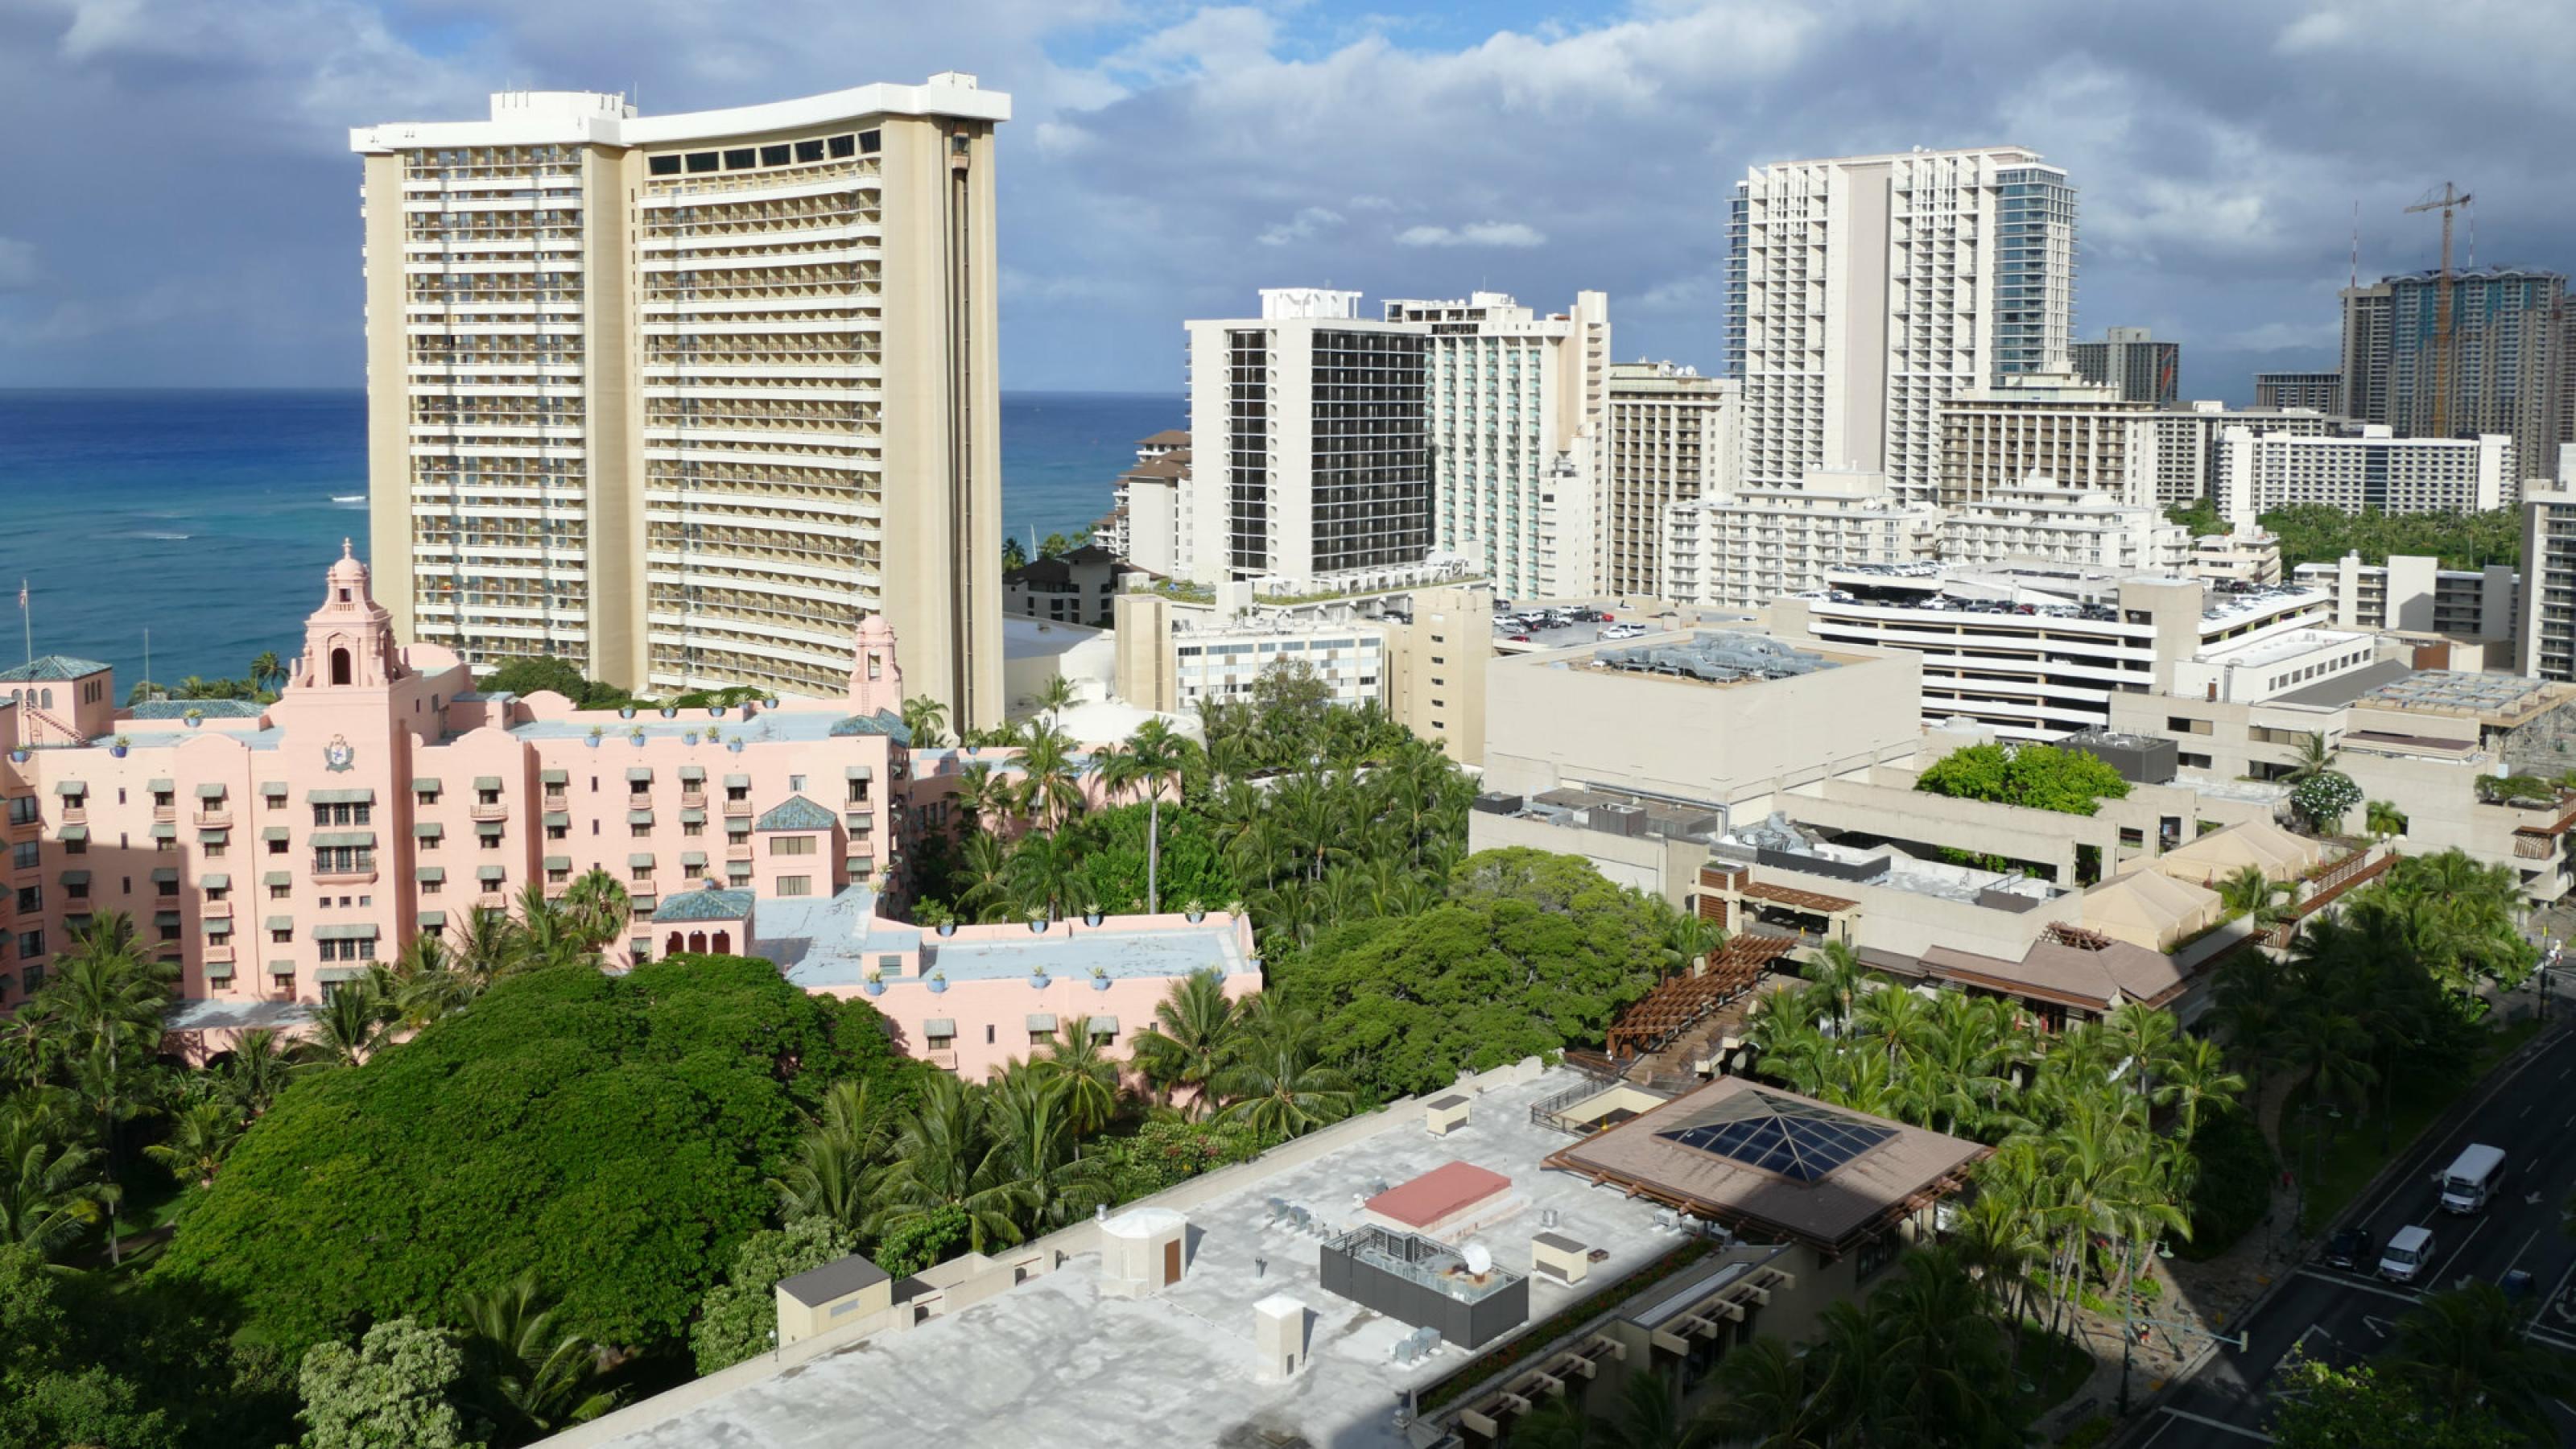 Stadtviertel von Honolulu mit Hochhäusern am Meer, zwischen den Gebäuden stehen Bäume und Palmen.